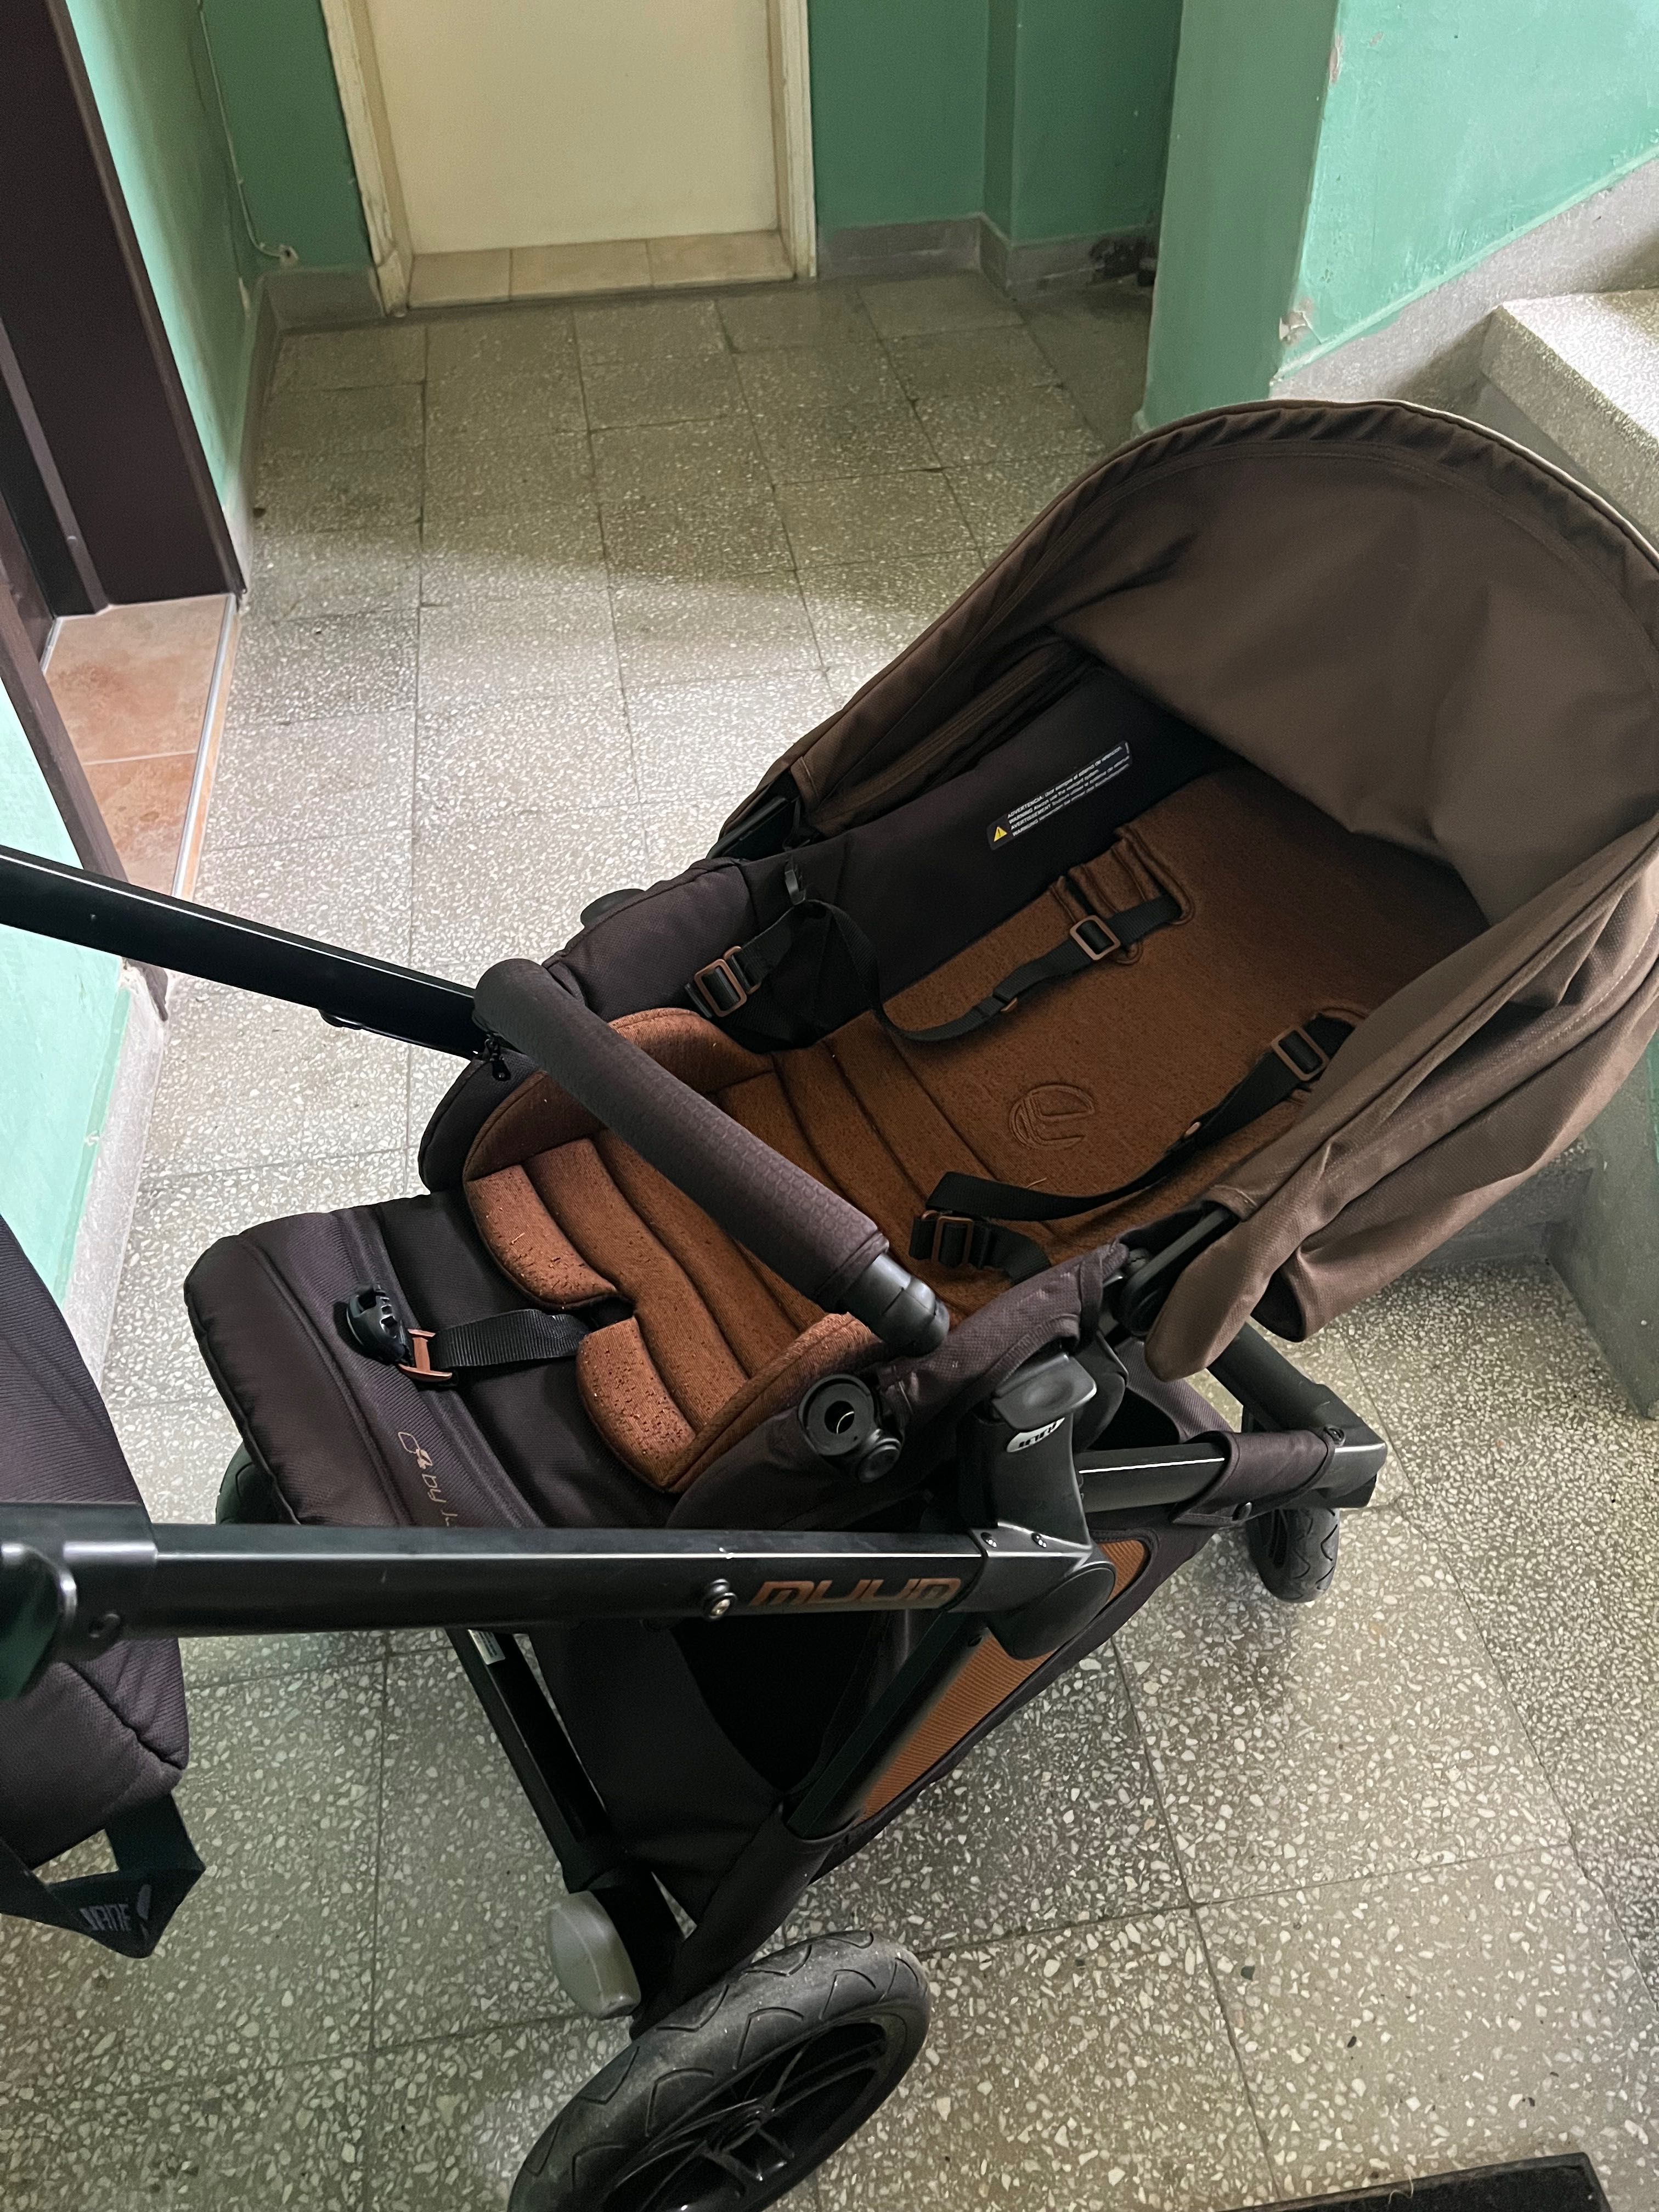 Бебешка количка Jane Muum 3в1